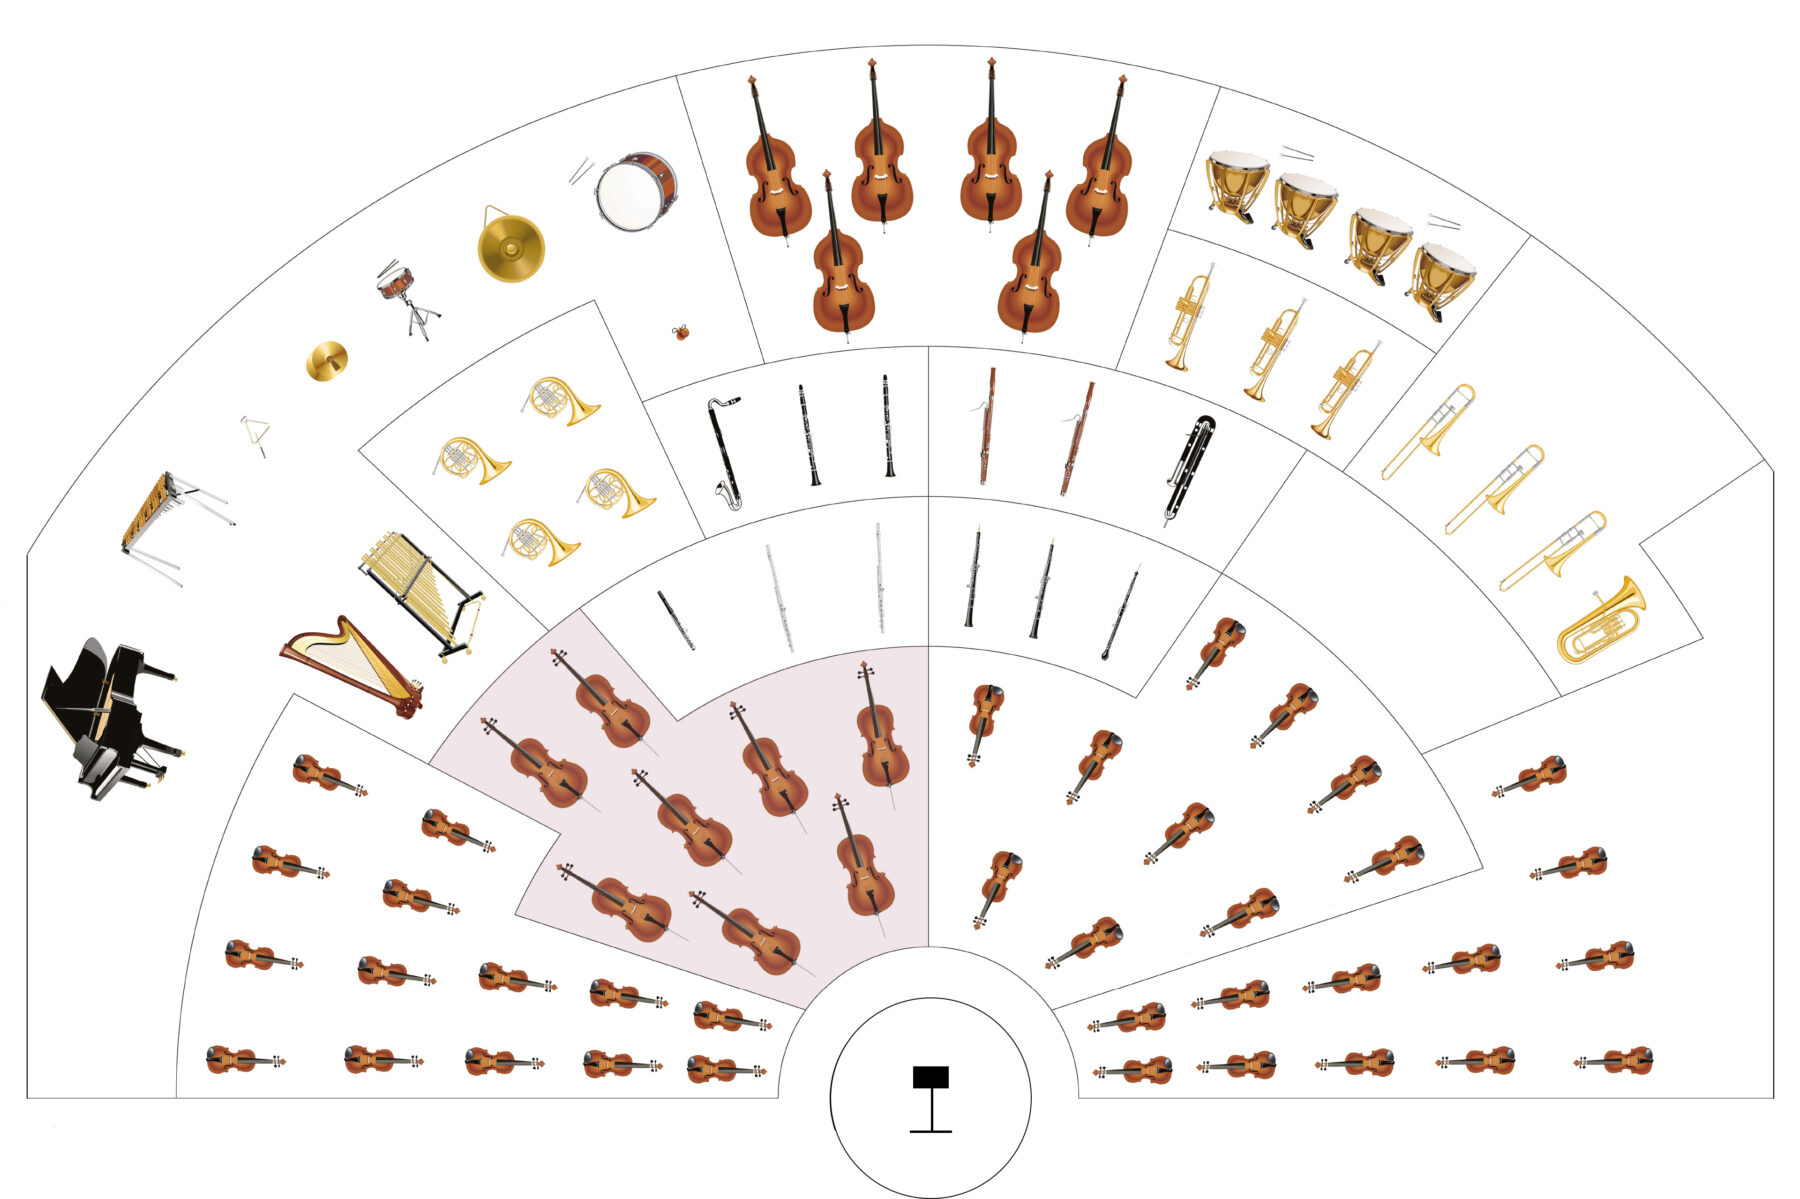 The musicians of the Orchestre Métropolitain